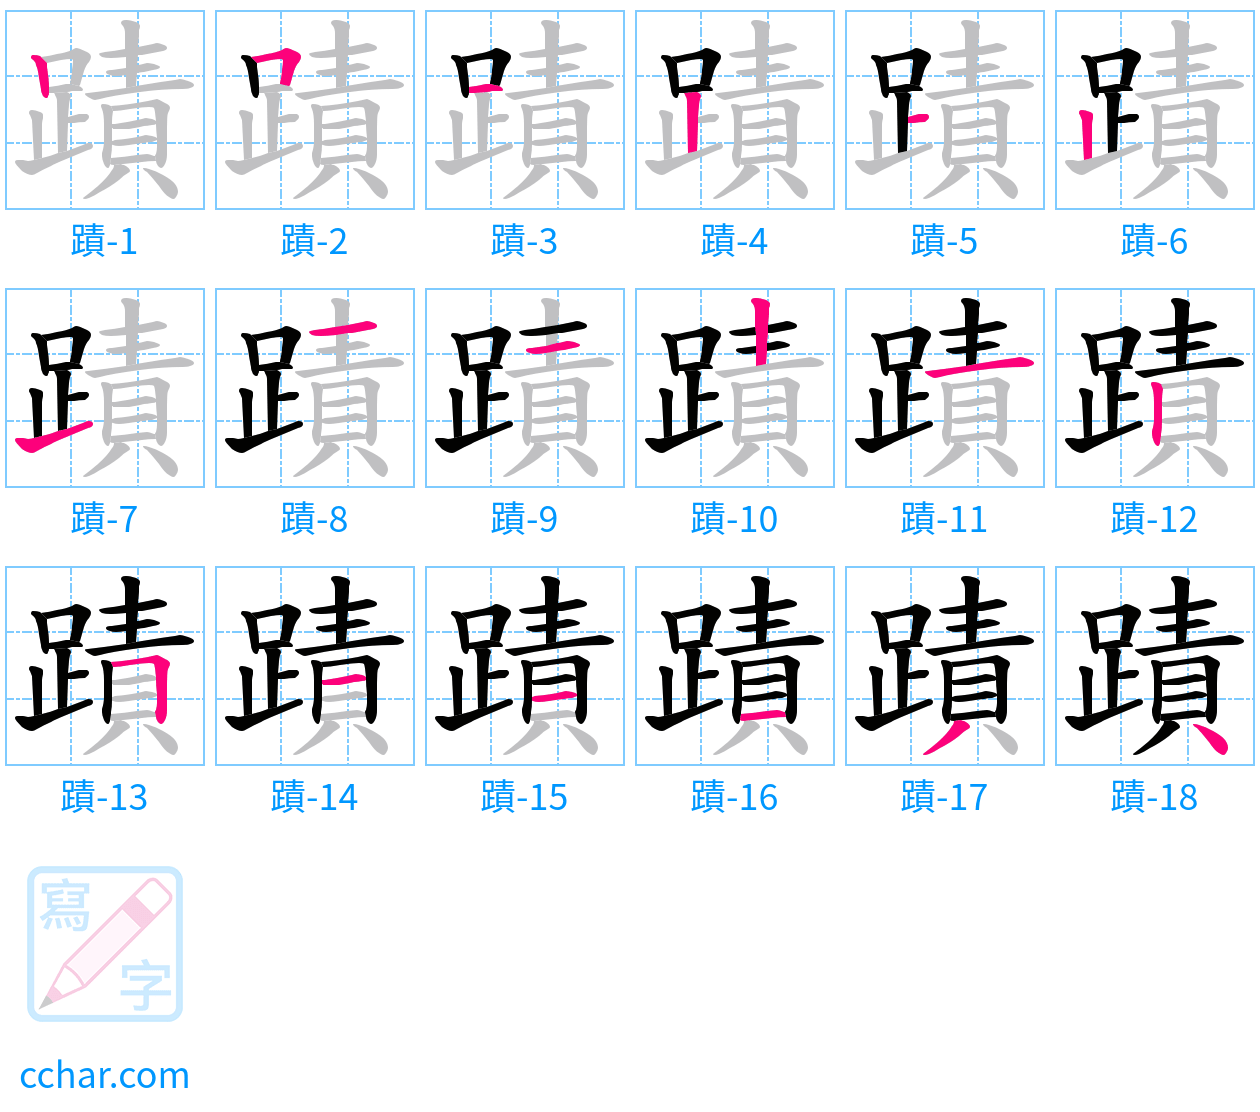 蹟 stroke order step-by-step diagram